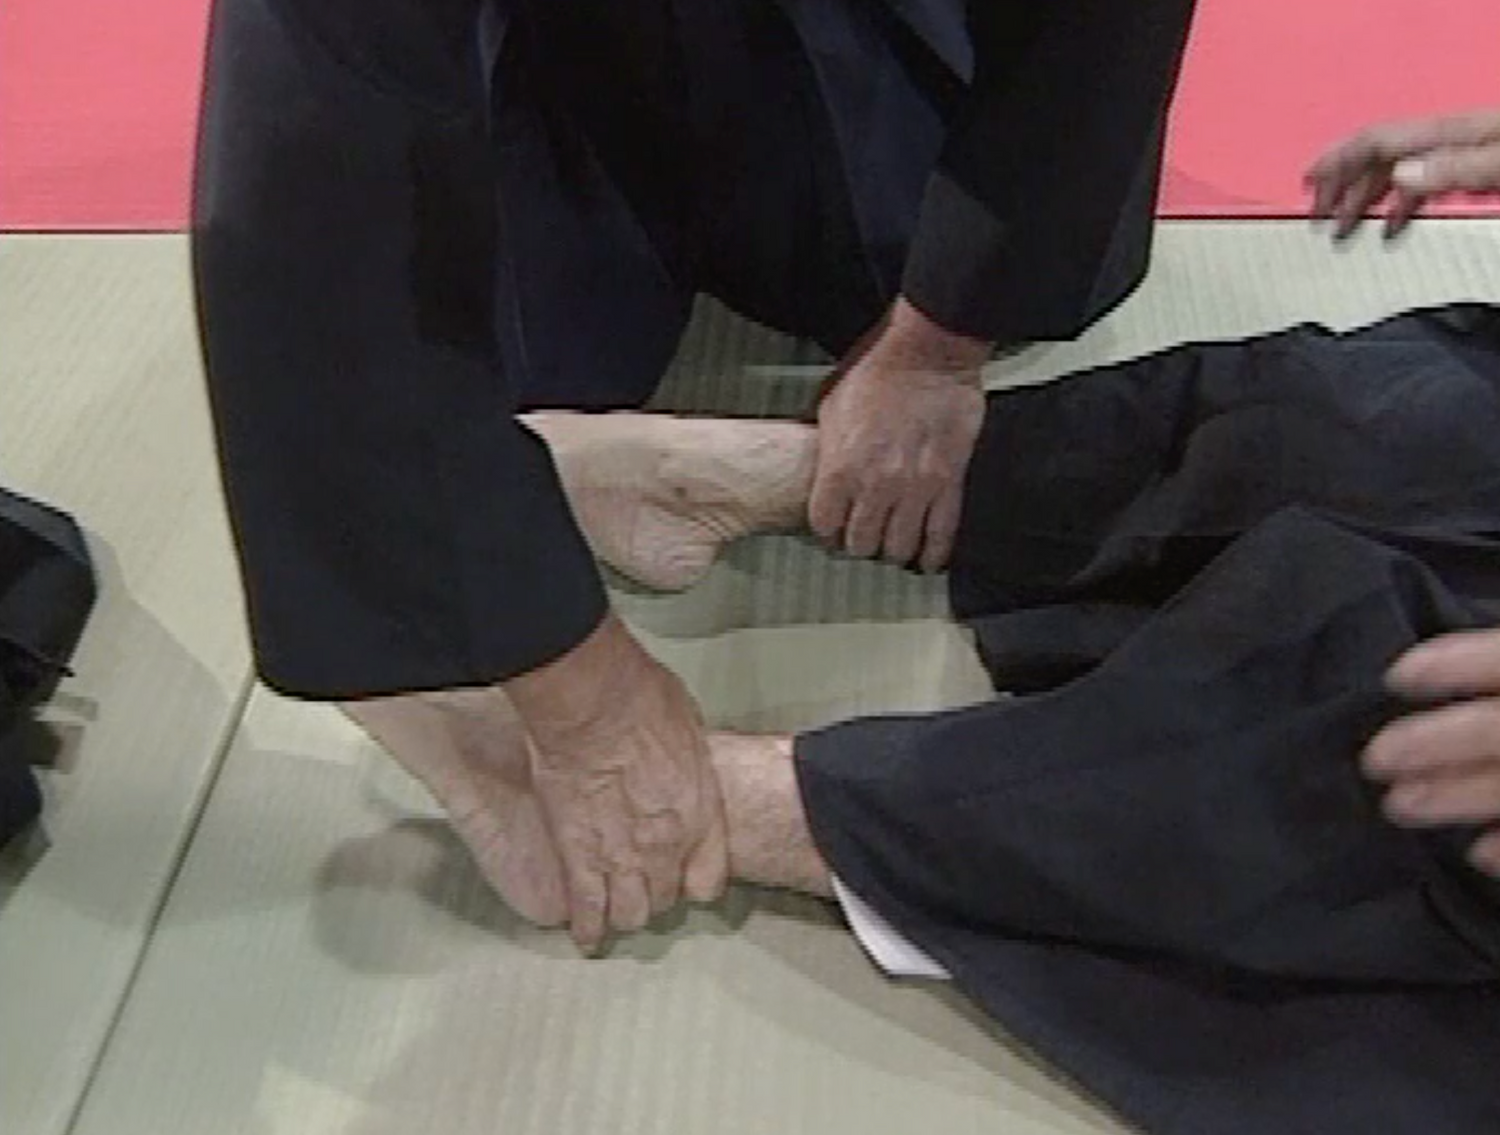 Daito Ryu Aikijujutsu: Nikajo Ura Techniques DVD 1